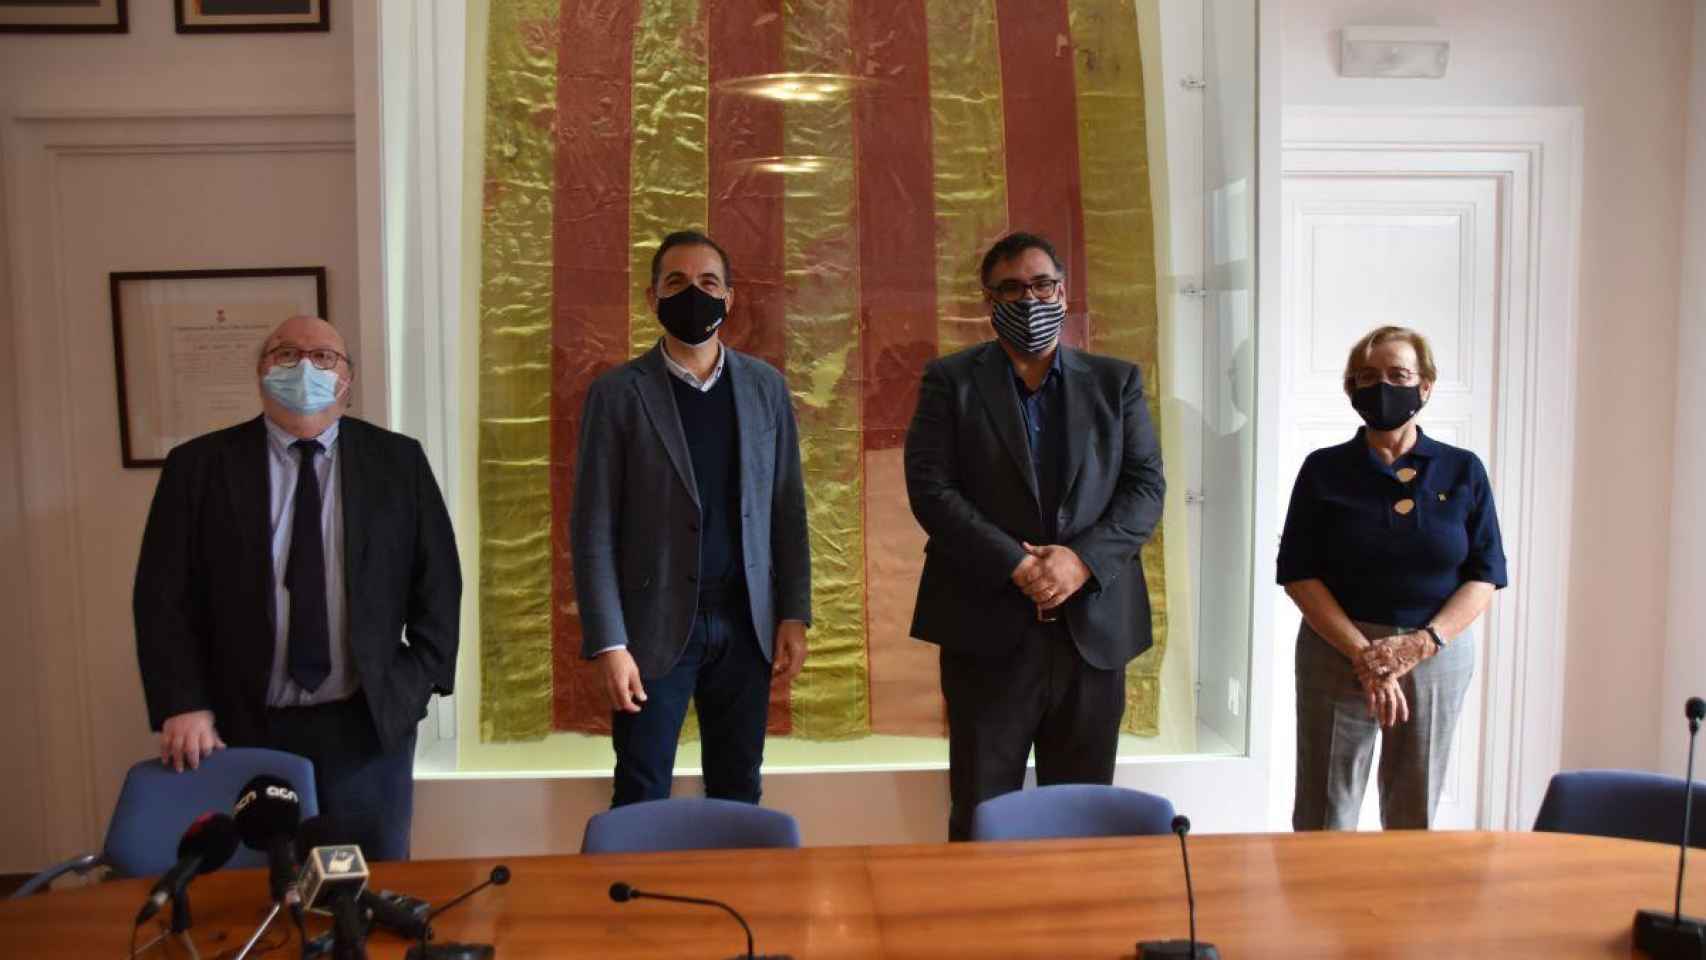 Los cuatro alcaldes de la Costa Brava posan tras la rueda de prensa / AYUNTAMIENTO SANT FELIU de GUIXOLS